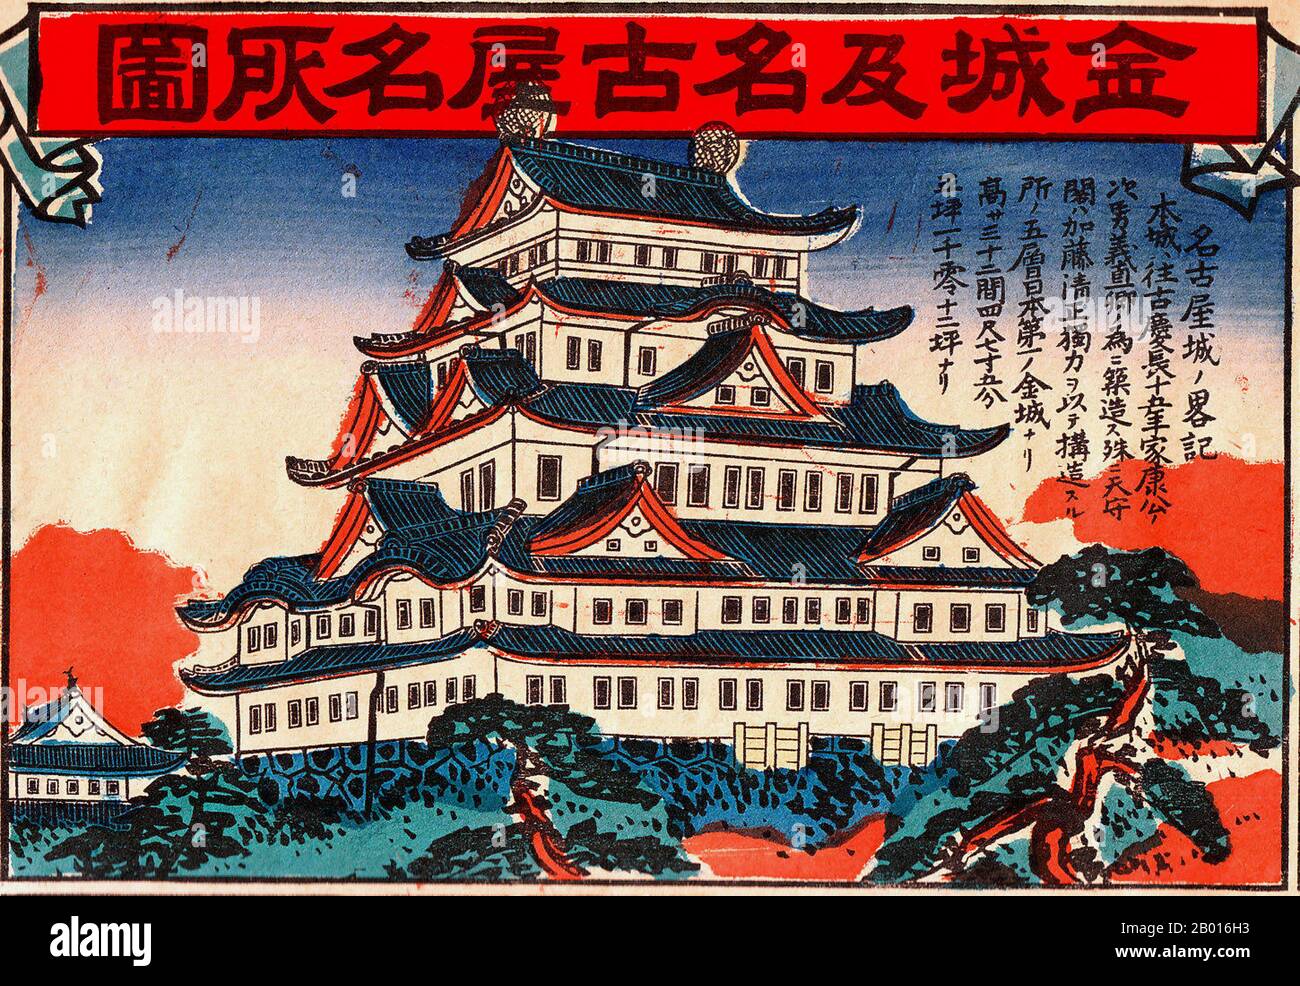 Il Castello di Nagoya (Nagoya-jō) è un castello situato a Nagoya, Giappone centrale. Durante il periodo Edo, il Castello di Nagoya era il centro di una delle più potenti città del Giappone, Nagoya-Juku, e includeva le fermate più importanti lungo il Minoji, che collegava il Tōkaidō con il Nakasendō. Foto Stock